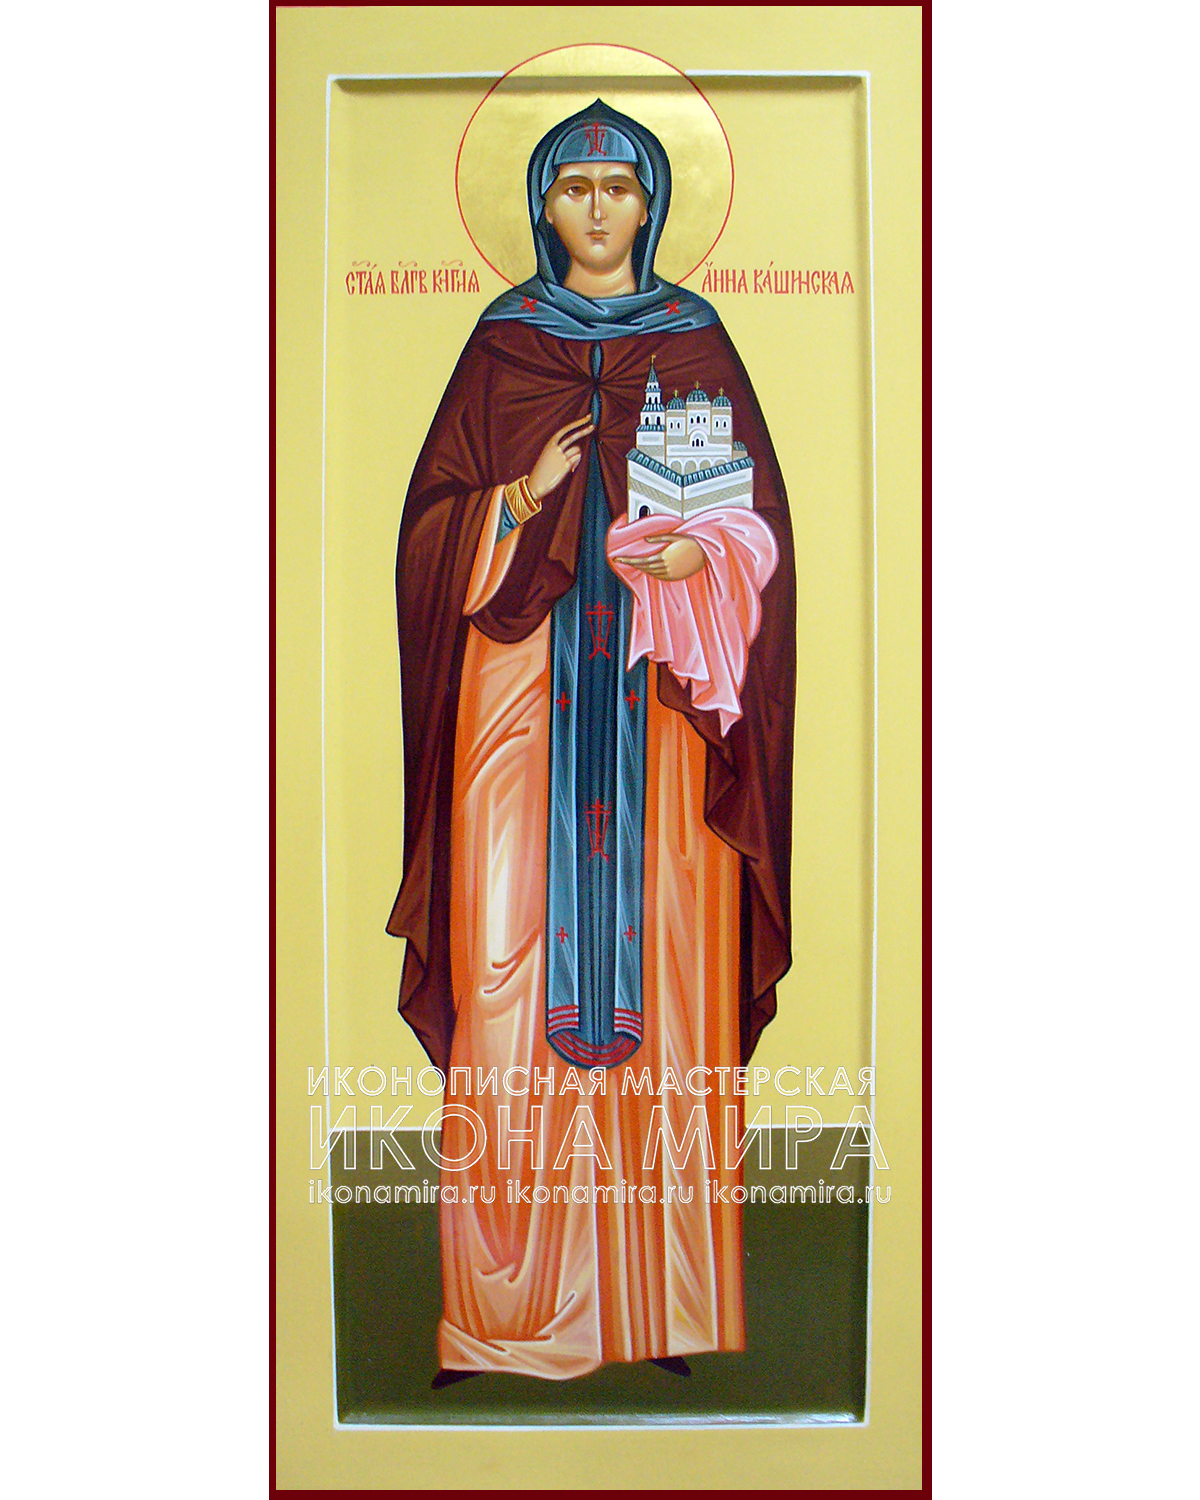 Мерная икона Анна Кашинская | Купить икону в е